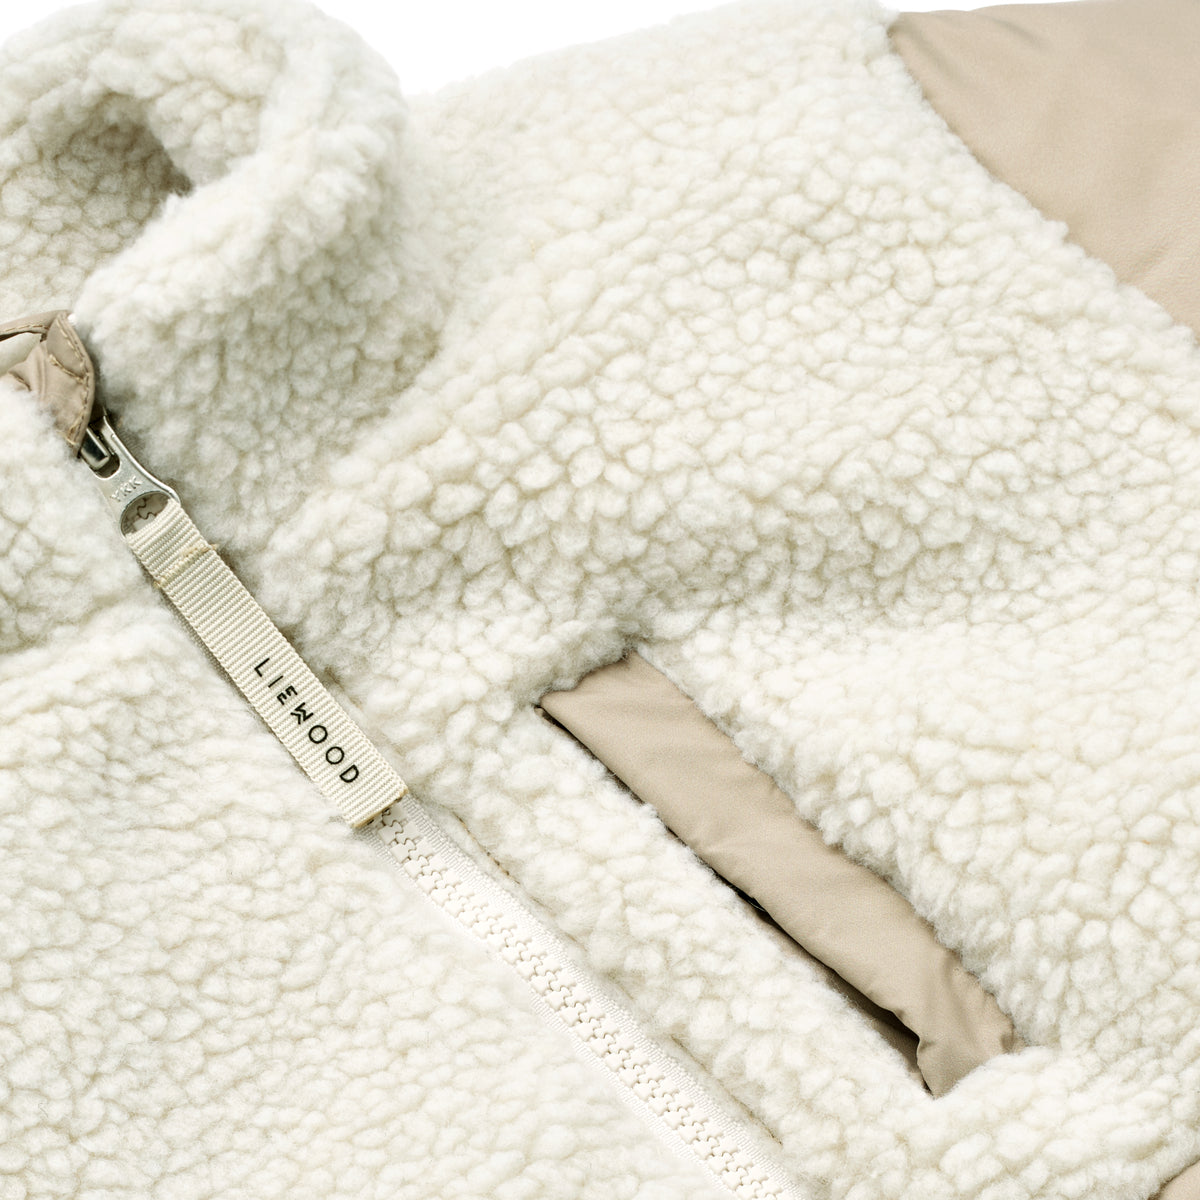 De Liewood jas Marlin mist is perfect voor het komende najaar. Deze colorblocking jas heeft een stoer design en is onmisbaar in de wintergarderobe. Gemaakt van 100% gerecycled polyester. VanZus.